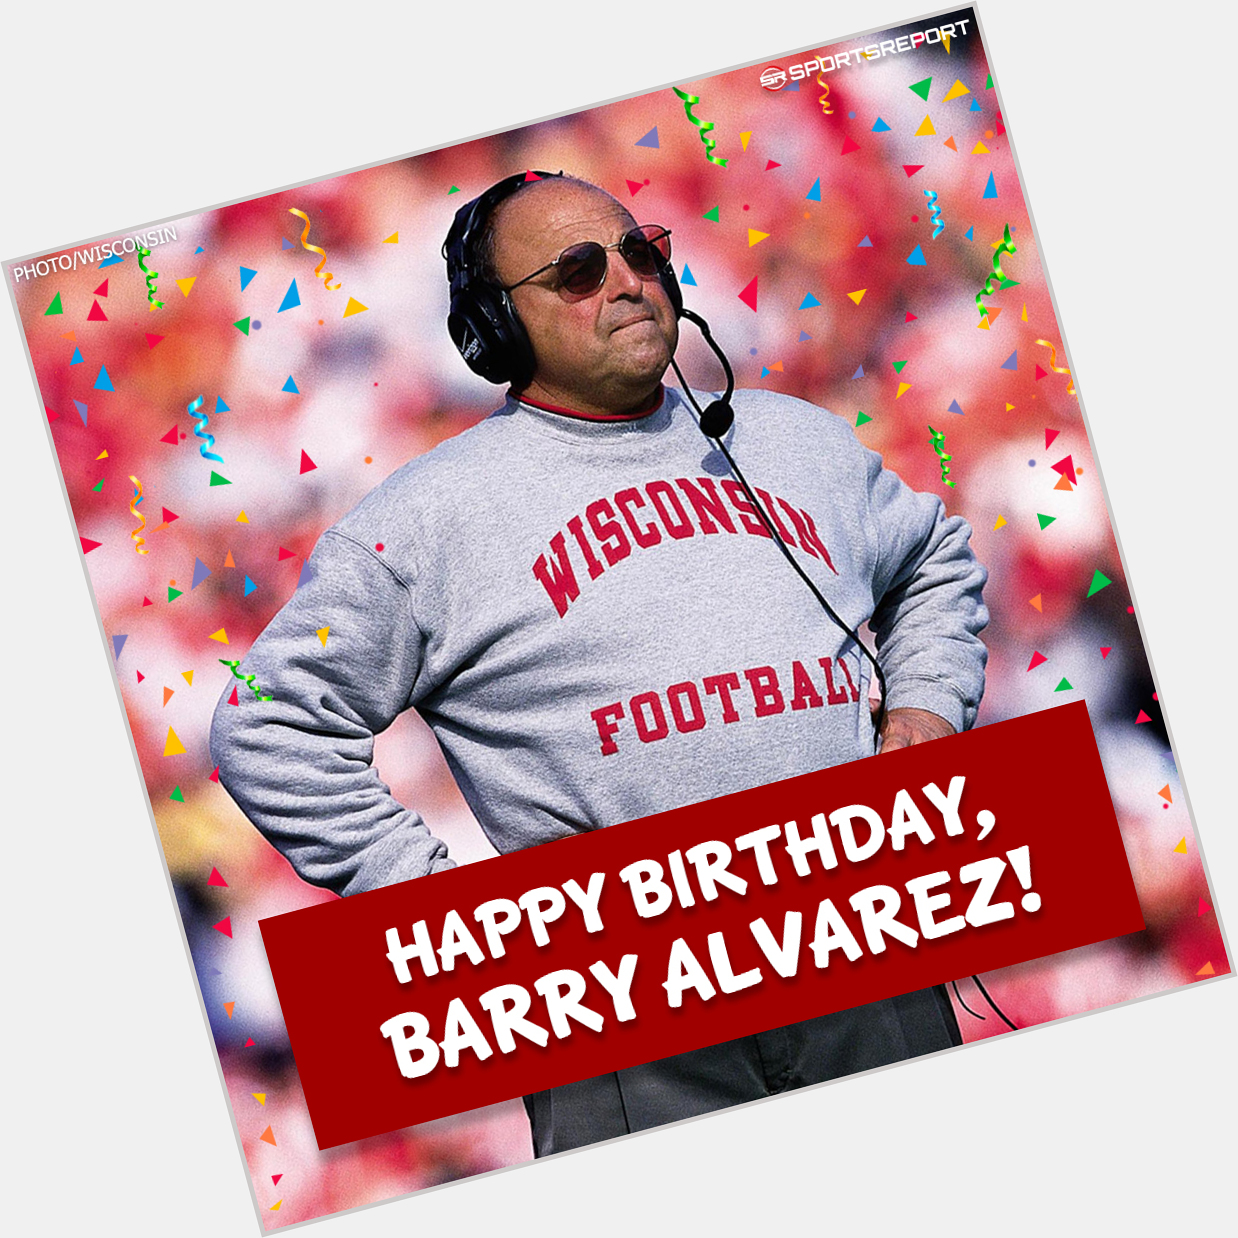 Happy Birthday to Coaching Legend, Barry Alvarez! 